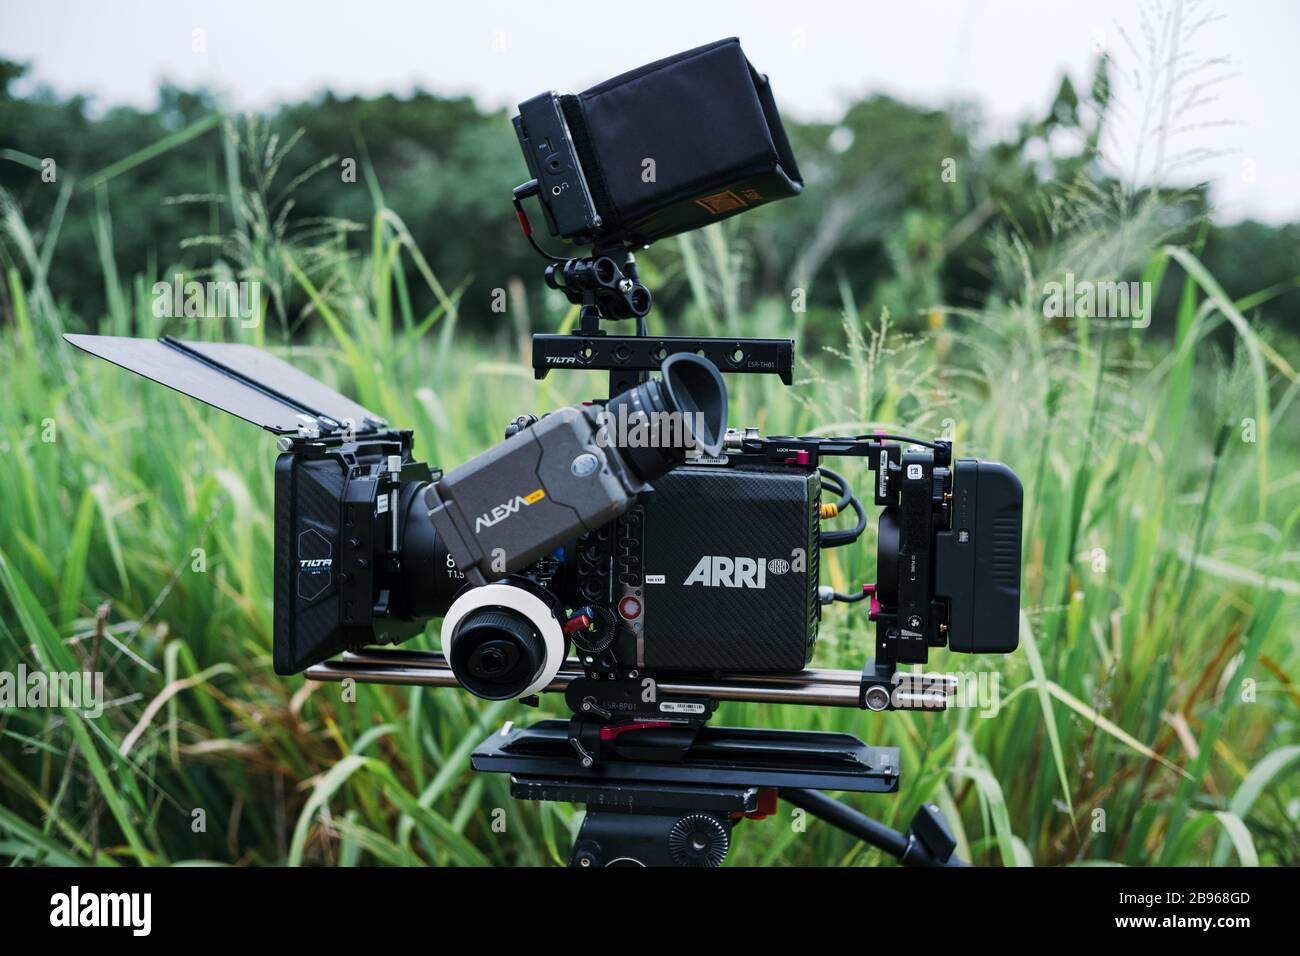 Fotocamera digitale con movimento professionale Arri Alexa con scatola opaca e follow focus su un treppiede con erba verde sullo sfondo Foto Stock